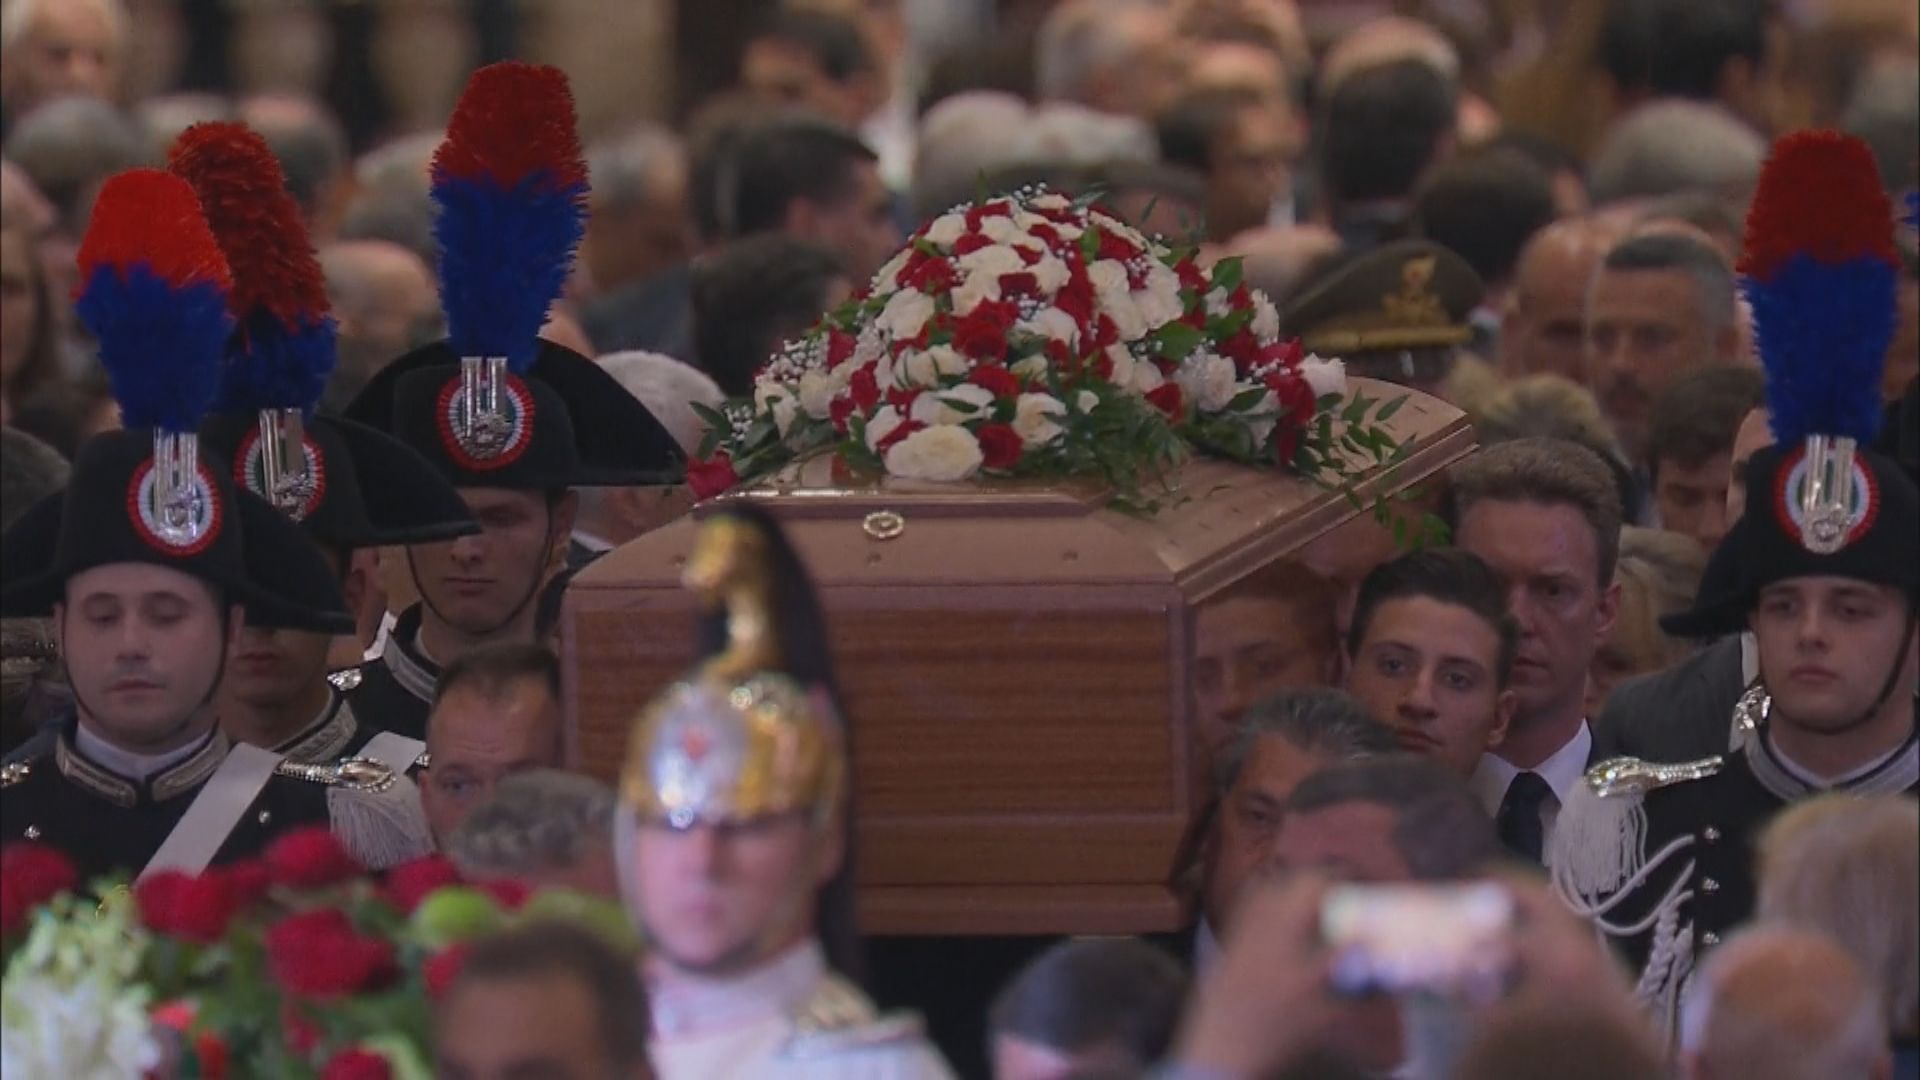 意大利為貝盧斯科尼舉行國葬